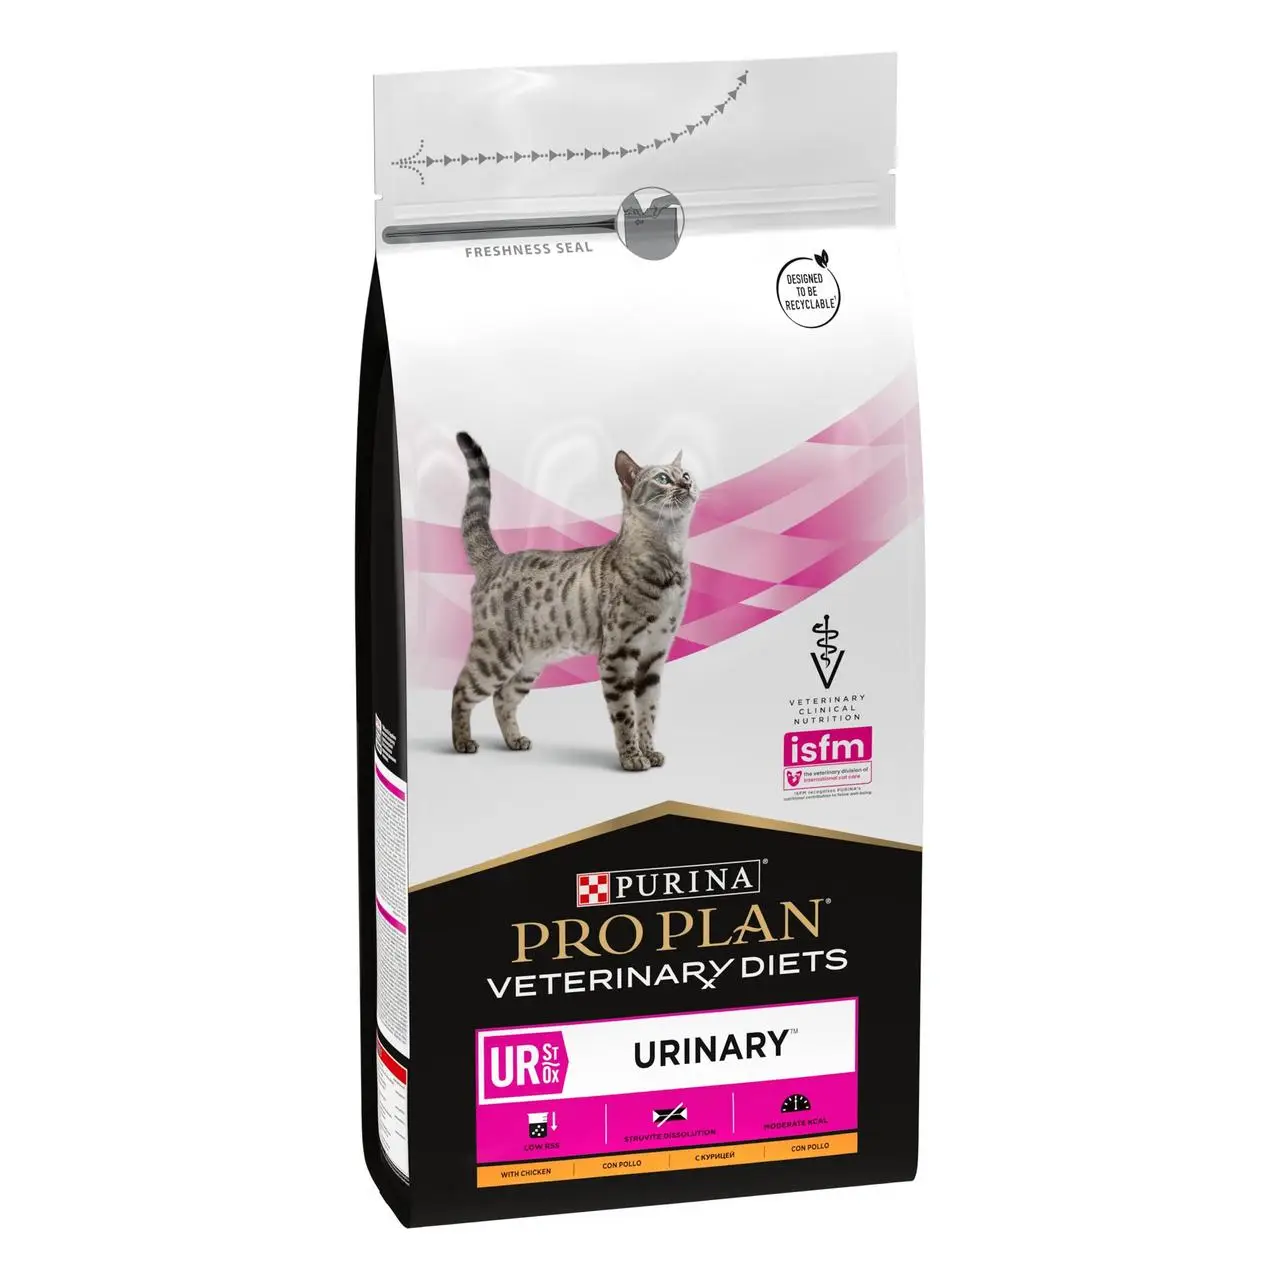 Purina Pro Plan PVD UR Urinary 1,5 кг - лікувальний корм для кішок c сечокам'яною хворобою1